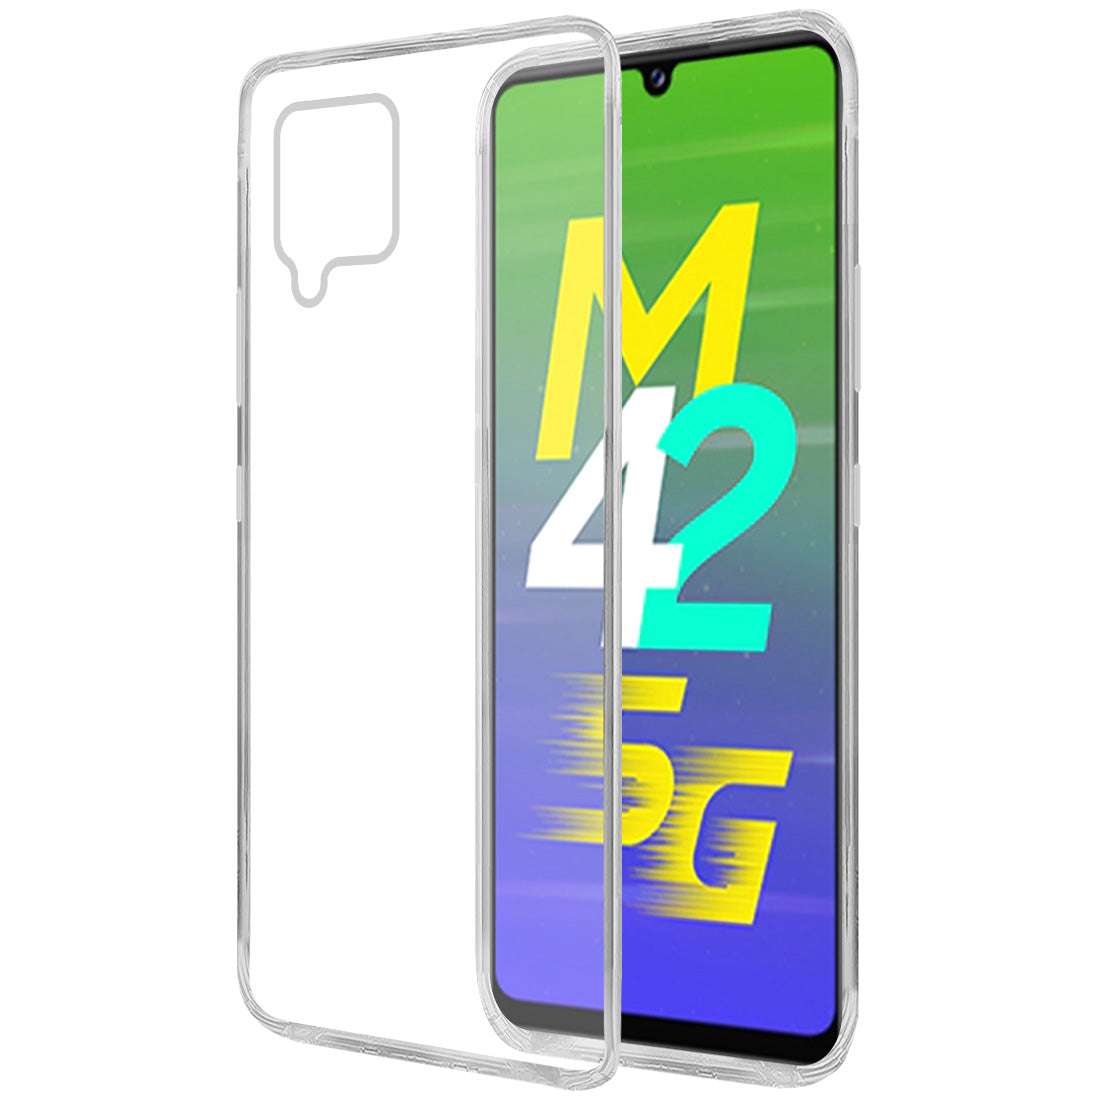 Samsung Galaxy M42 5G / A42 5G